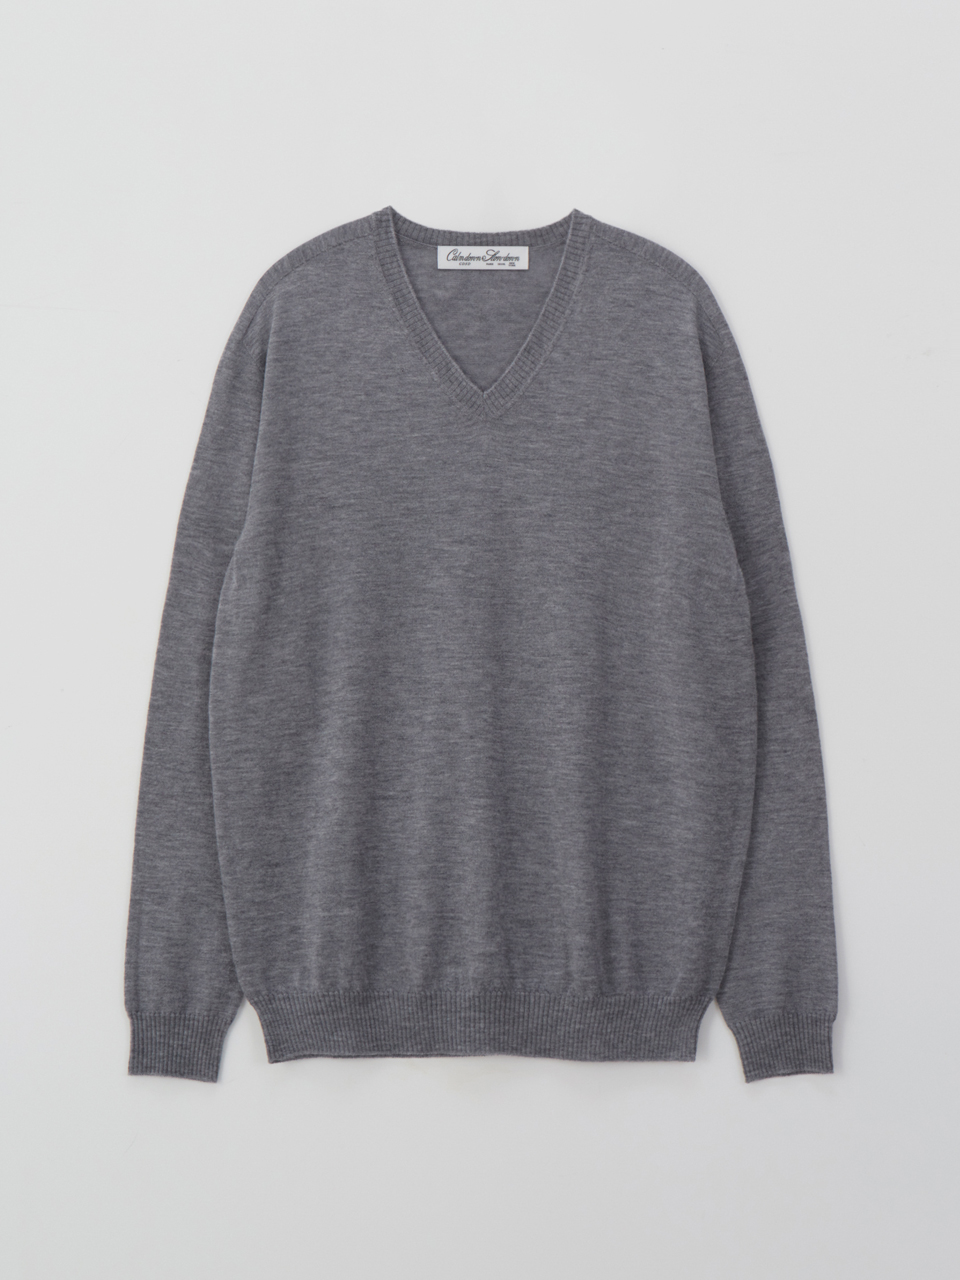 Classic v-neck merino wool knit_m.grey